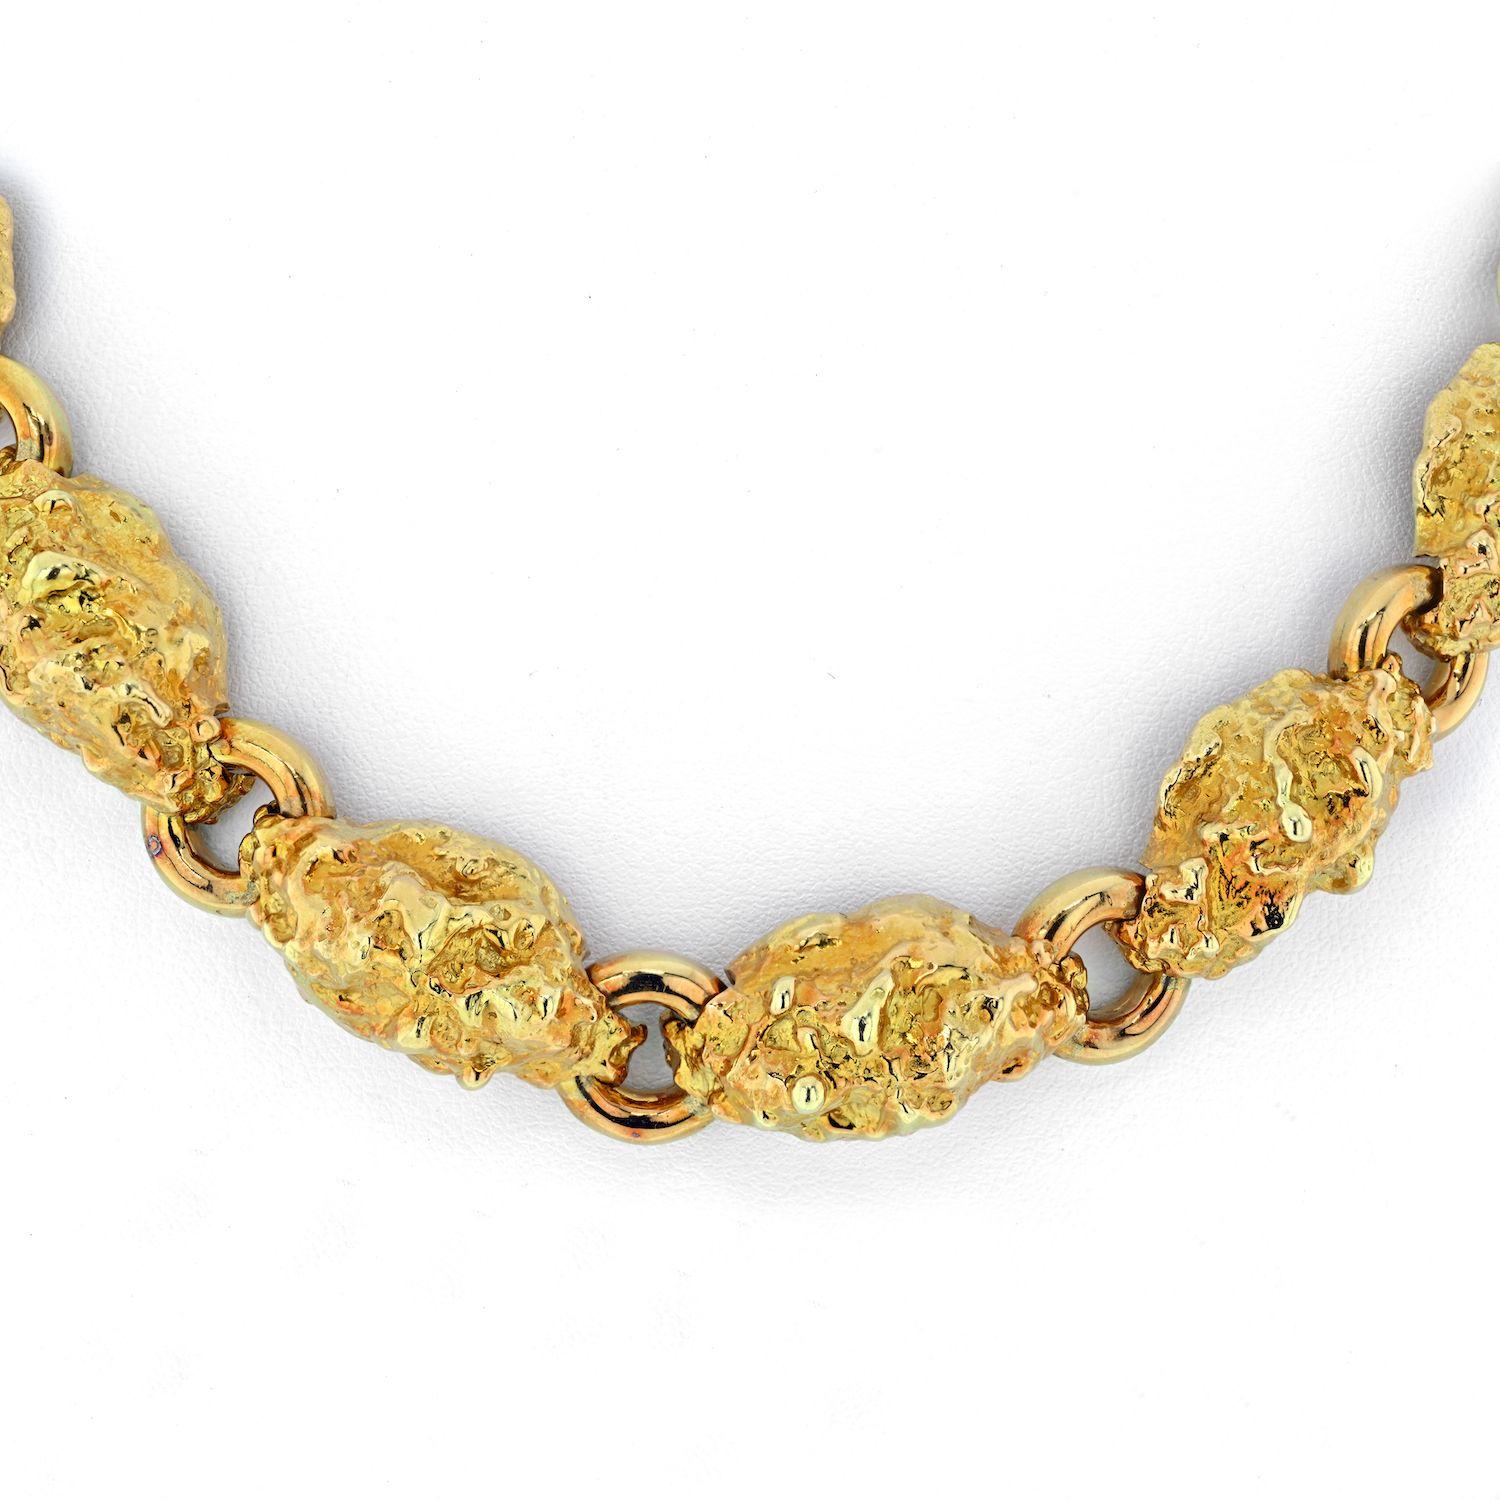 Composé de maillons en or jaune 18 carats de type pépite, ce collier David Webb a un mouvement progressif. Les pépites sont en or jaune 18 carats massif et se placent près du cou, juste au-dessus de la clavicule. C'est un collier parfait à porter